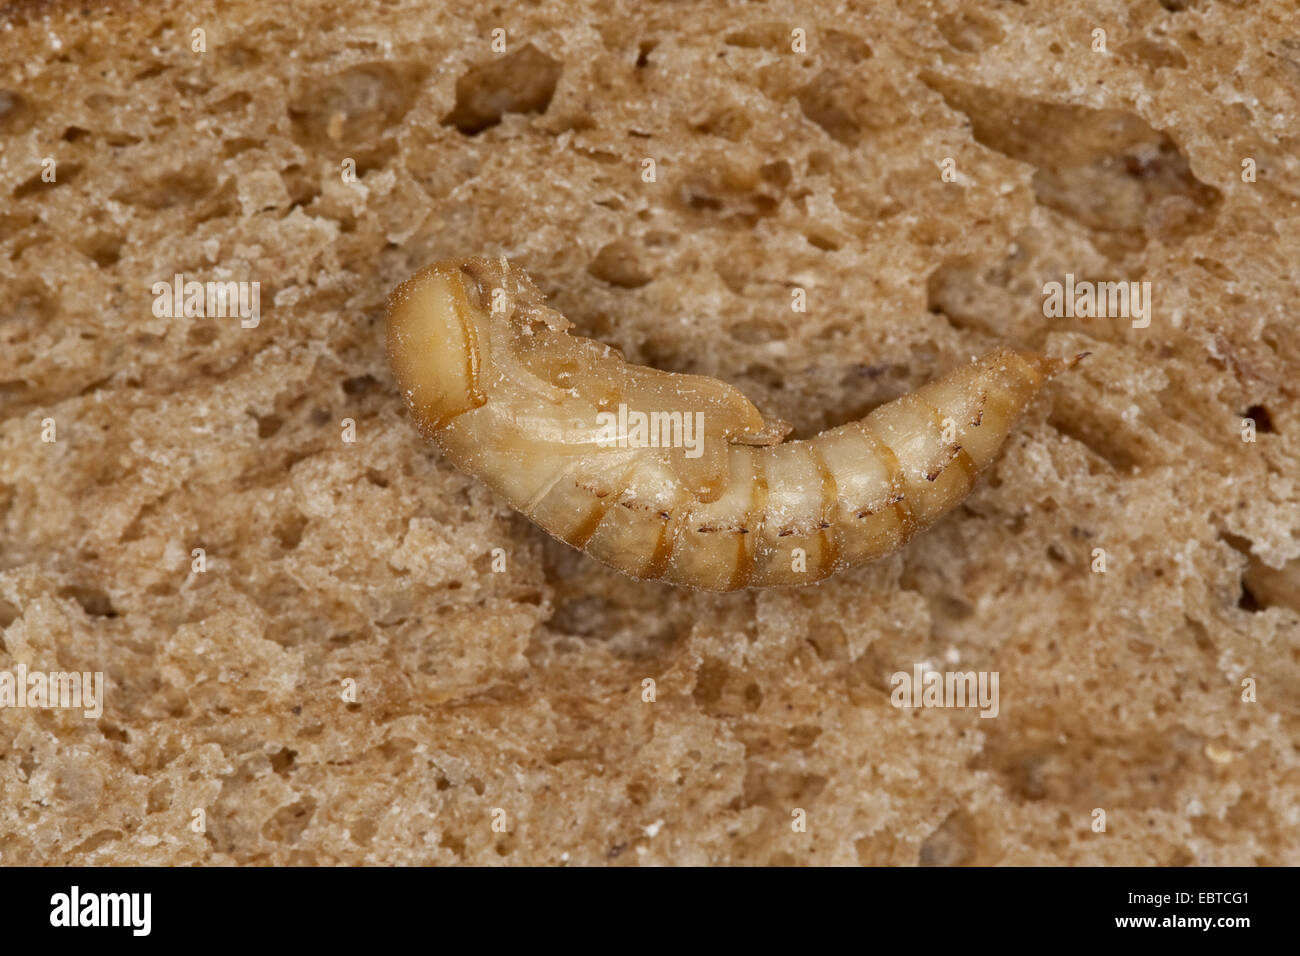 Yellow mealworm escarabajo (Tenebrio molitor), pupa en una rebanada de pan, Alemania Foto de stock